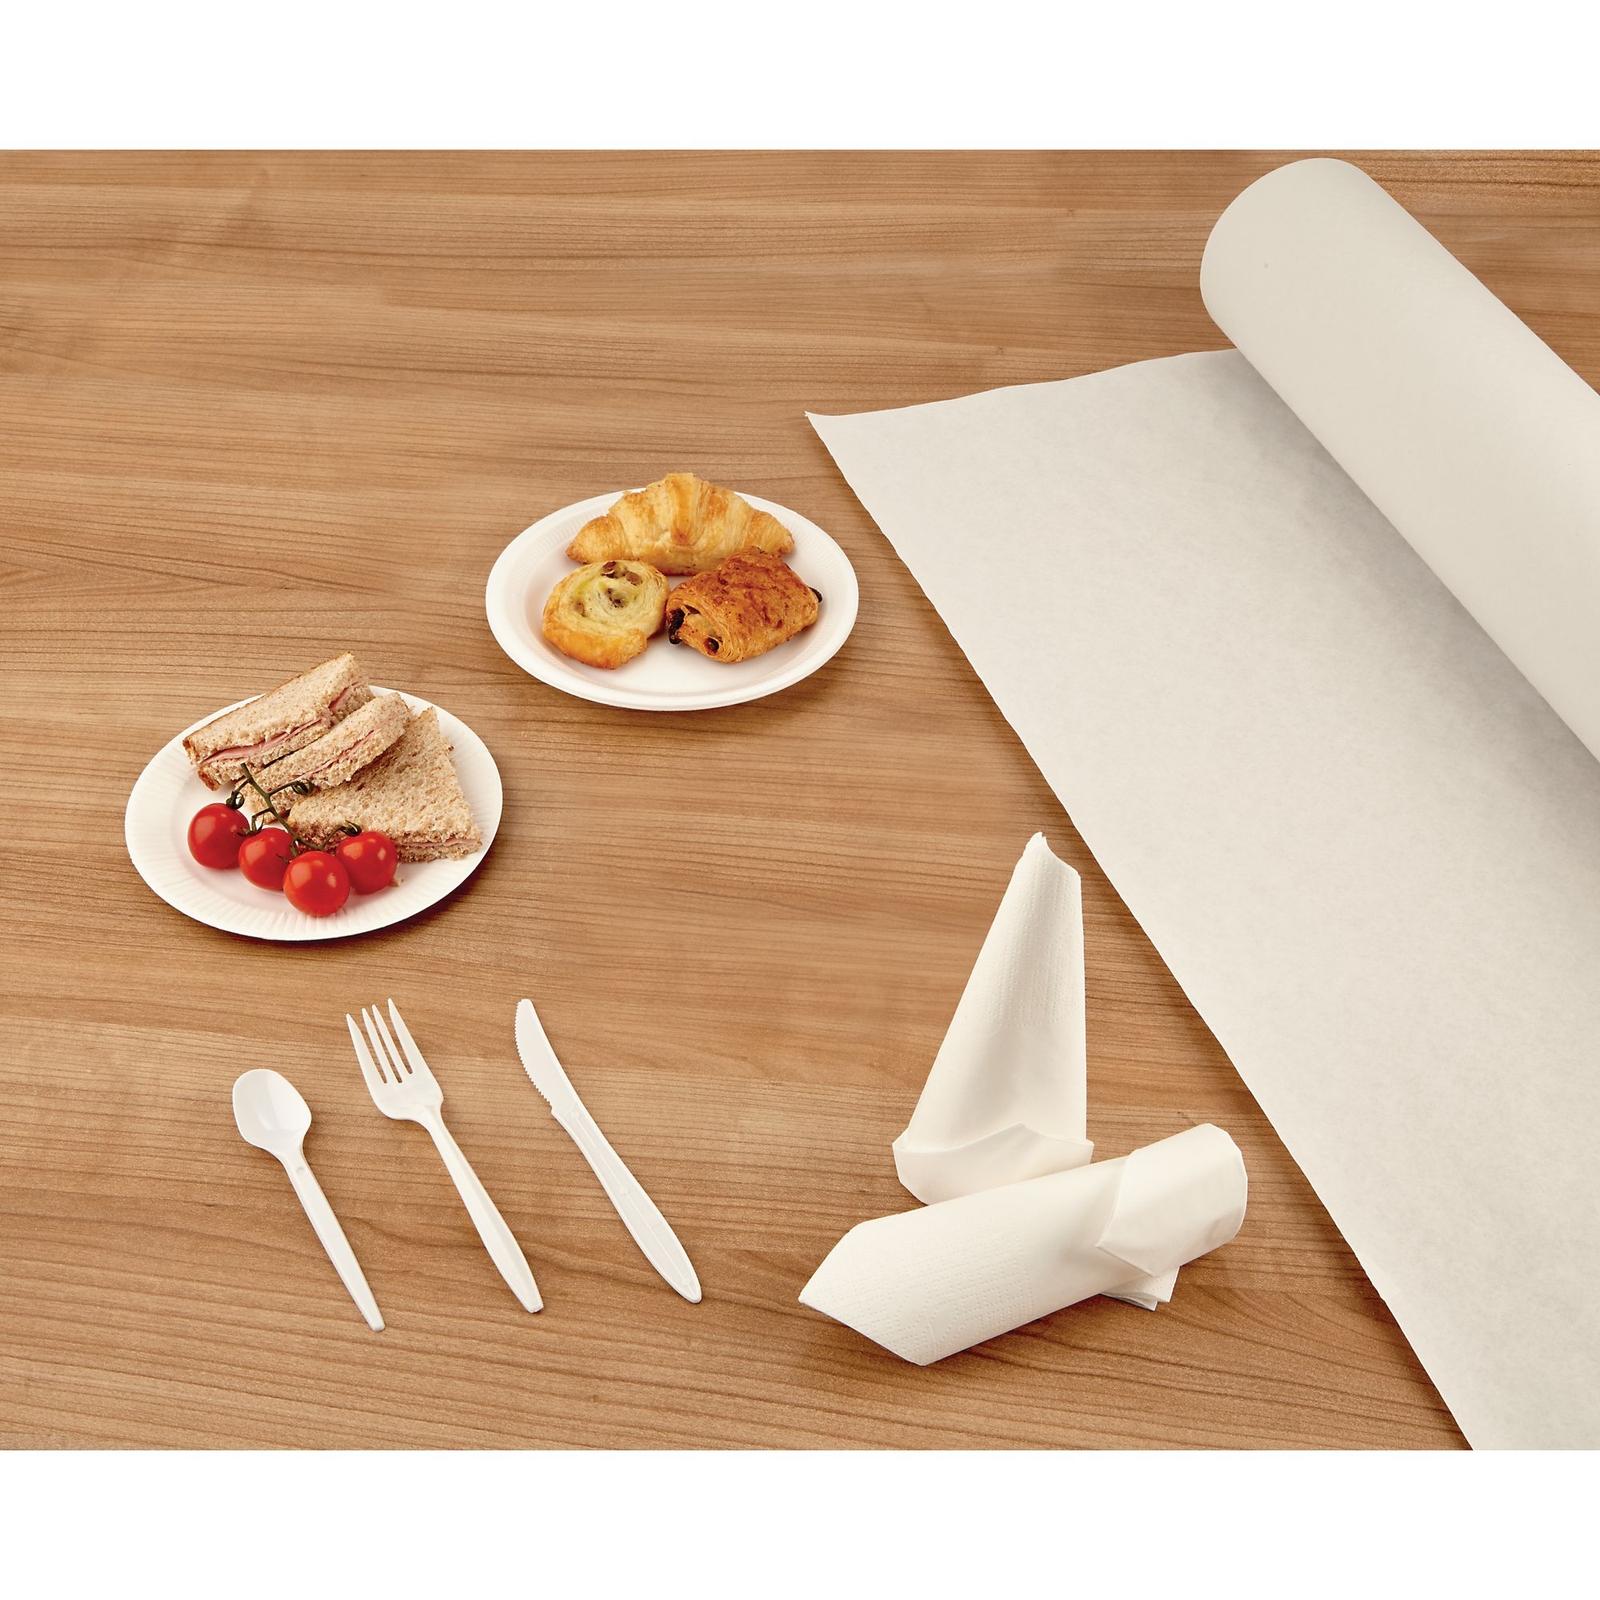 Paper Banquet Roll